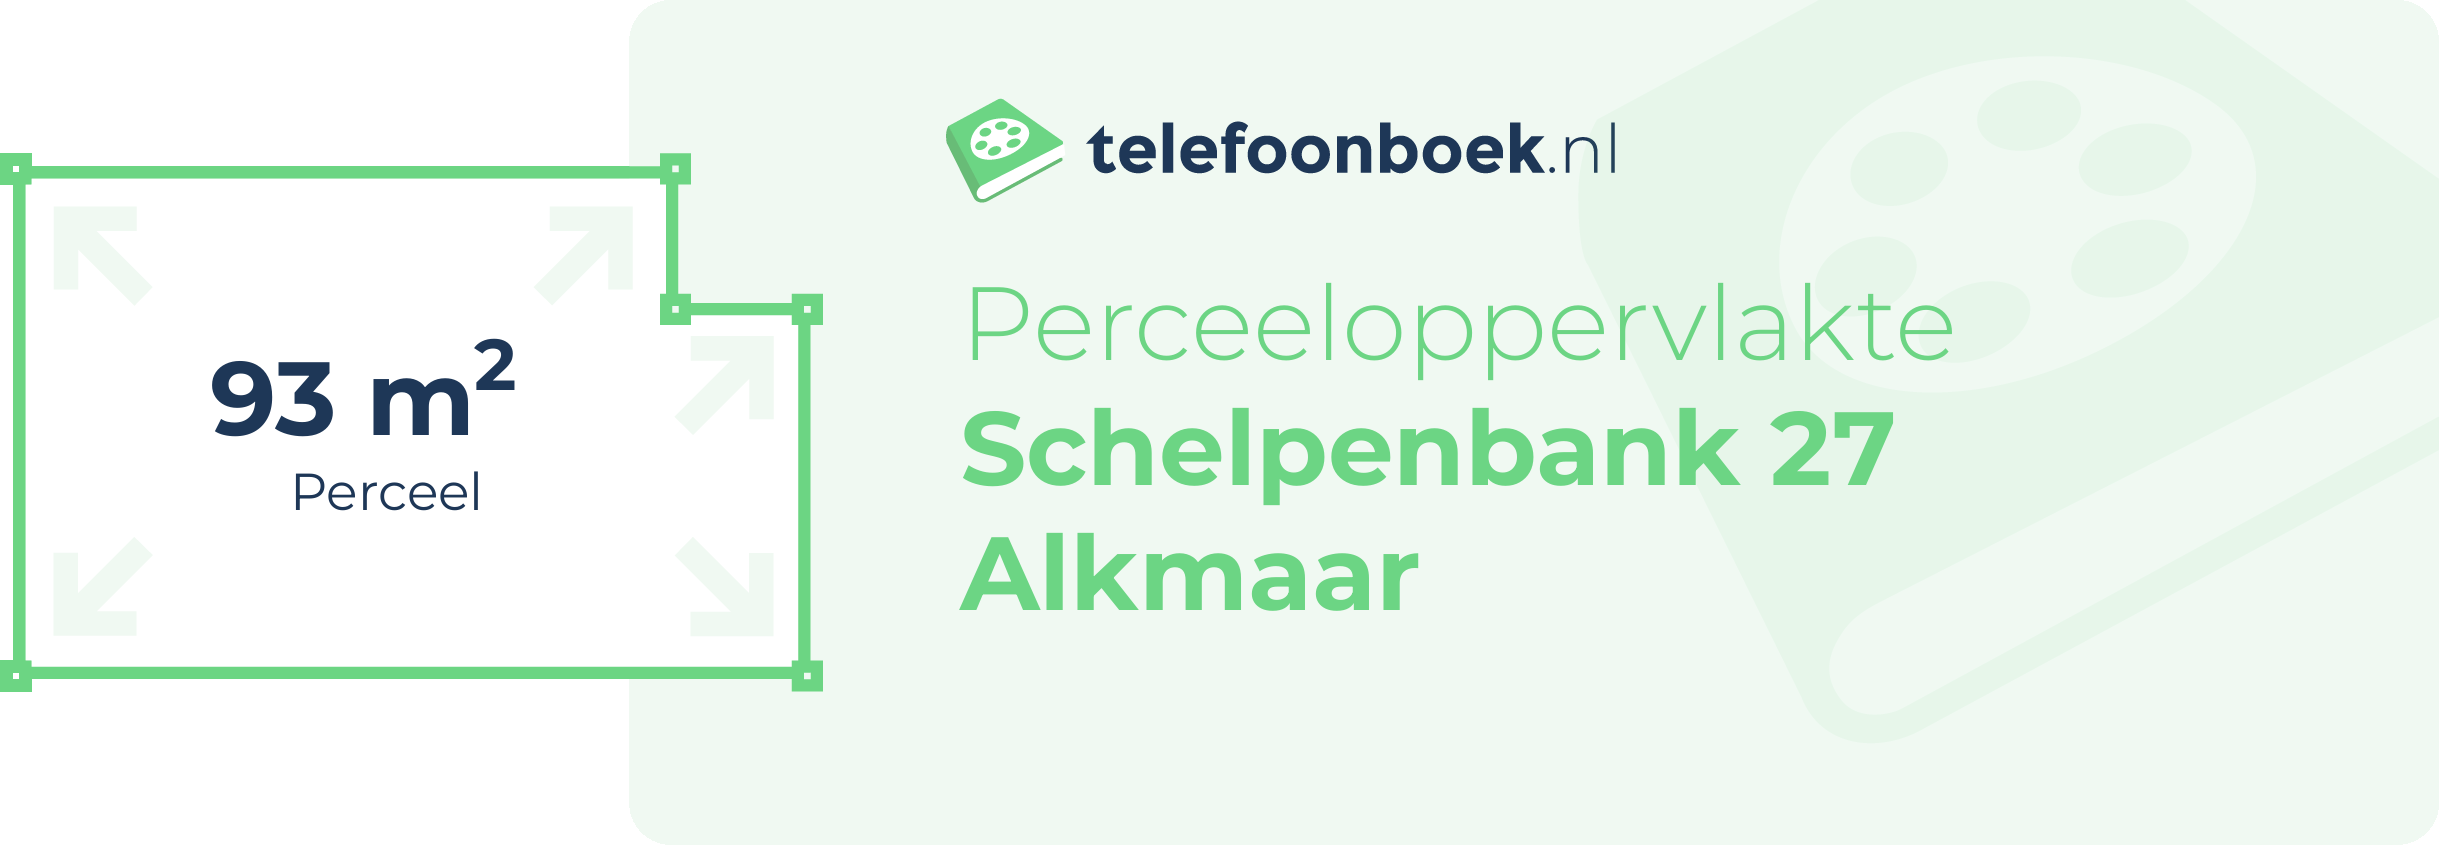 Perceeloppervlakte Schelpenbank 27 Alkmaar